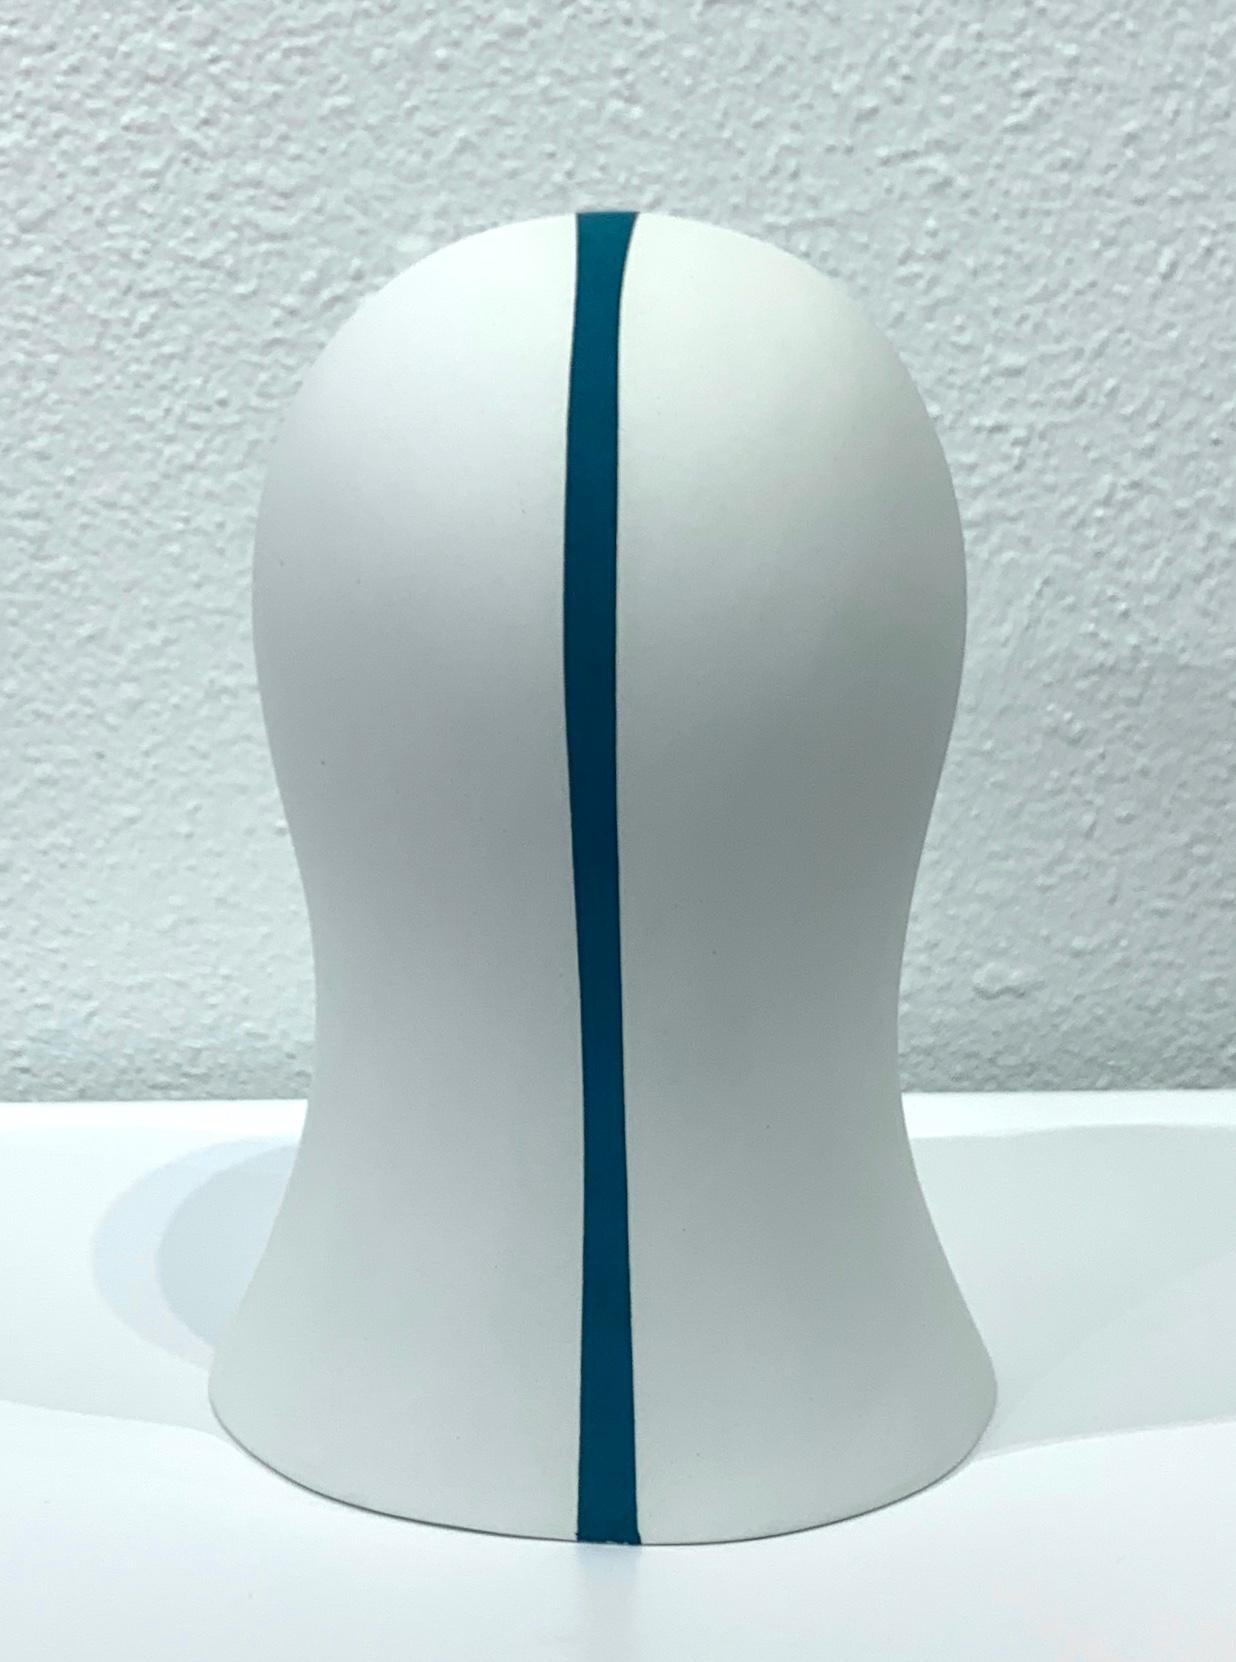 Teal Division Veil, Chloe Rizzo Sculpture Porcelain Female Head White 3